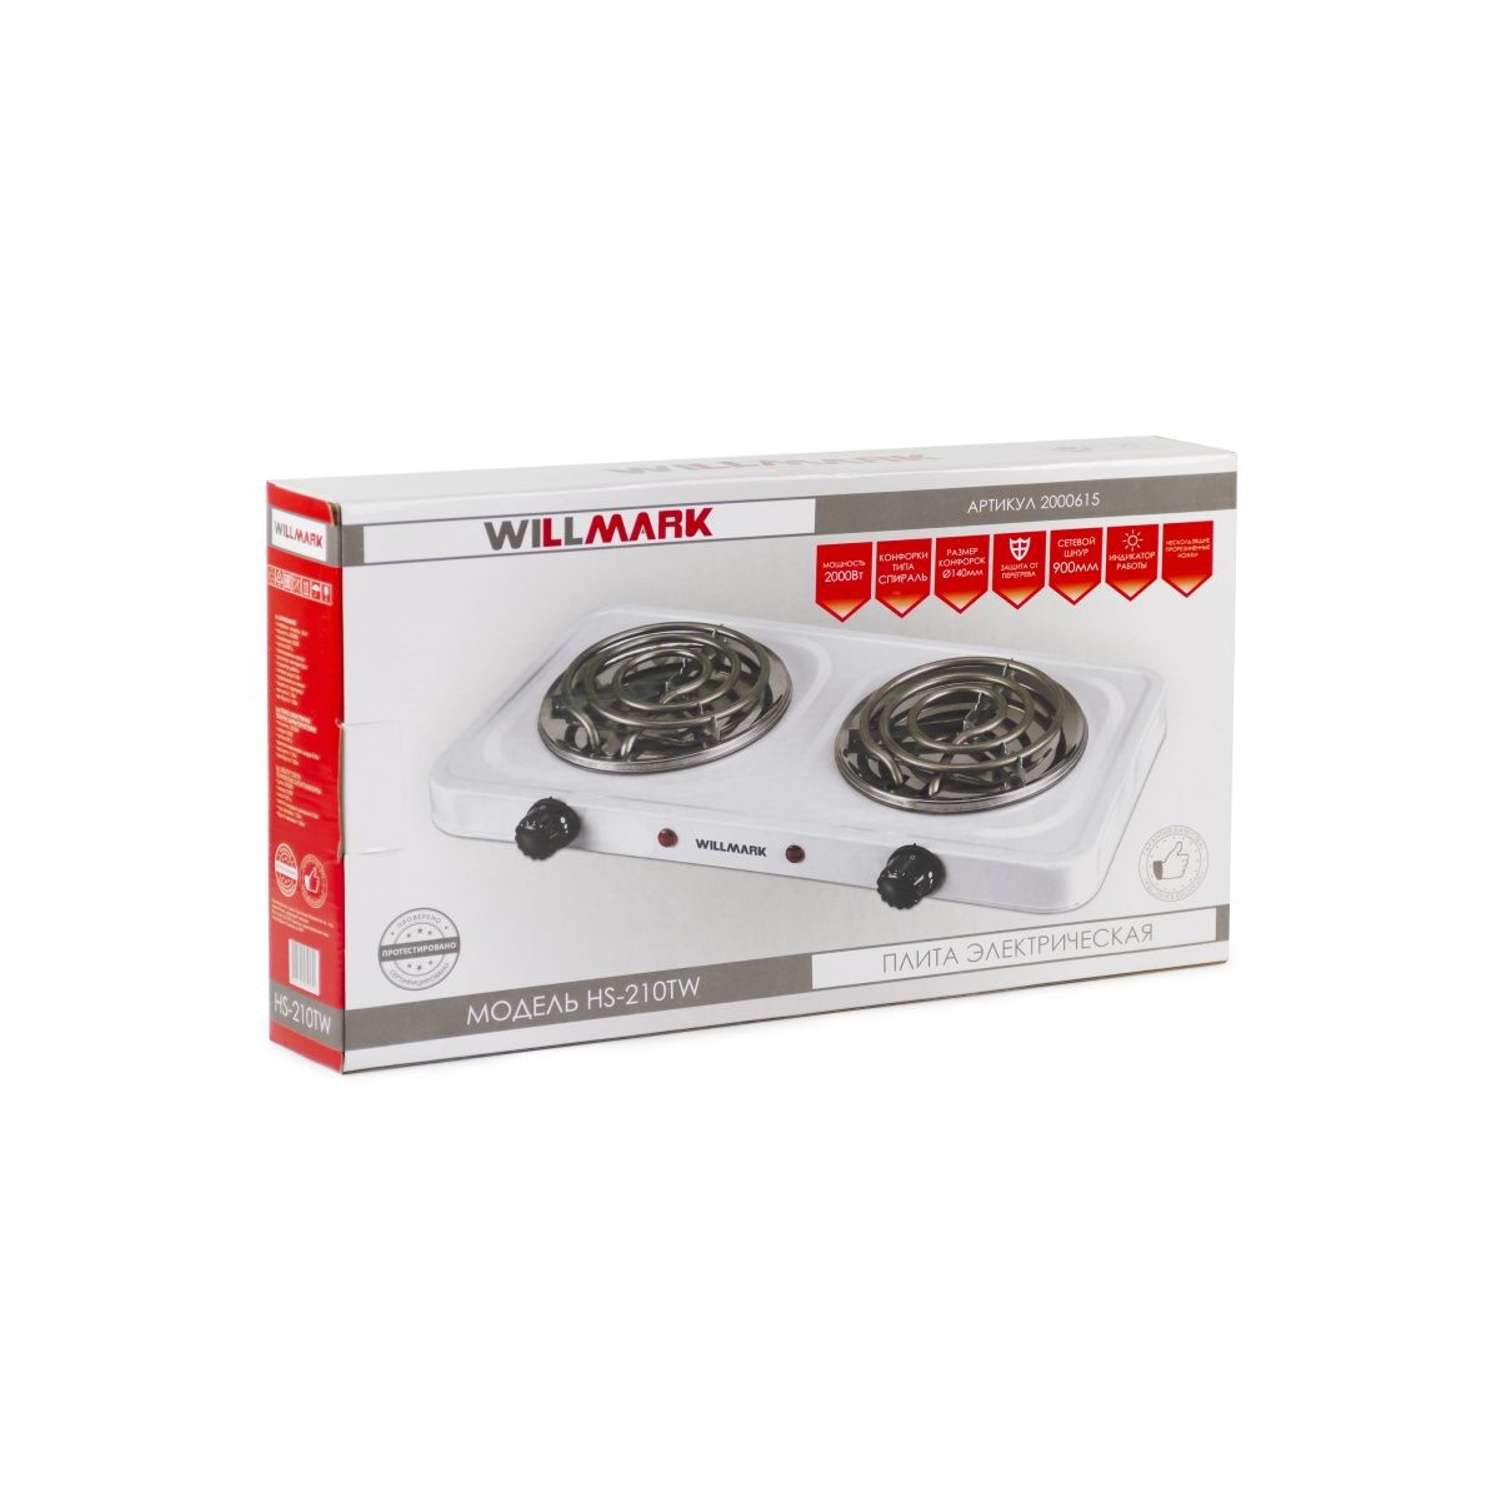 Плитка электрическая Willmark HS-210TW 2 конфорки индикатор включения эмалированная сталь - фото 7